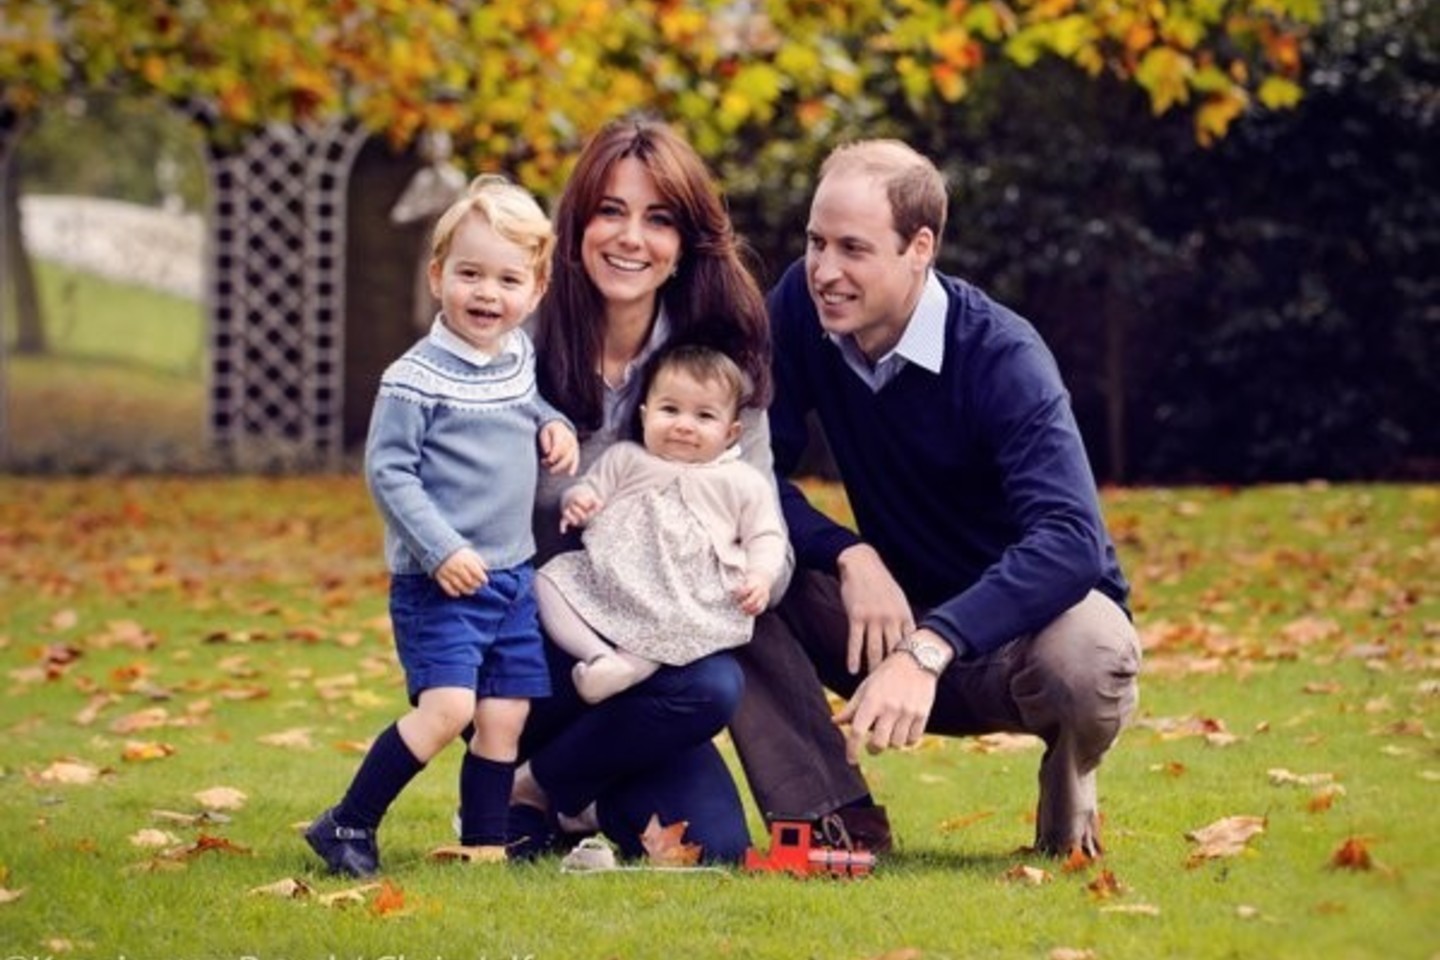 Naujausia kunigaikščių šeimos nuotrauka trykšta laime.<br>kensington Royal/ Chris Jelf nuotr.